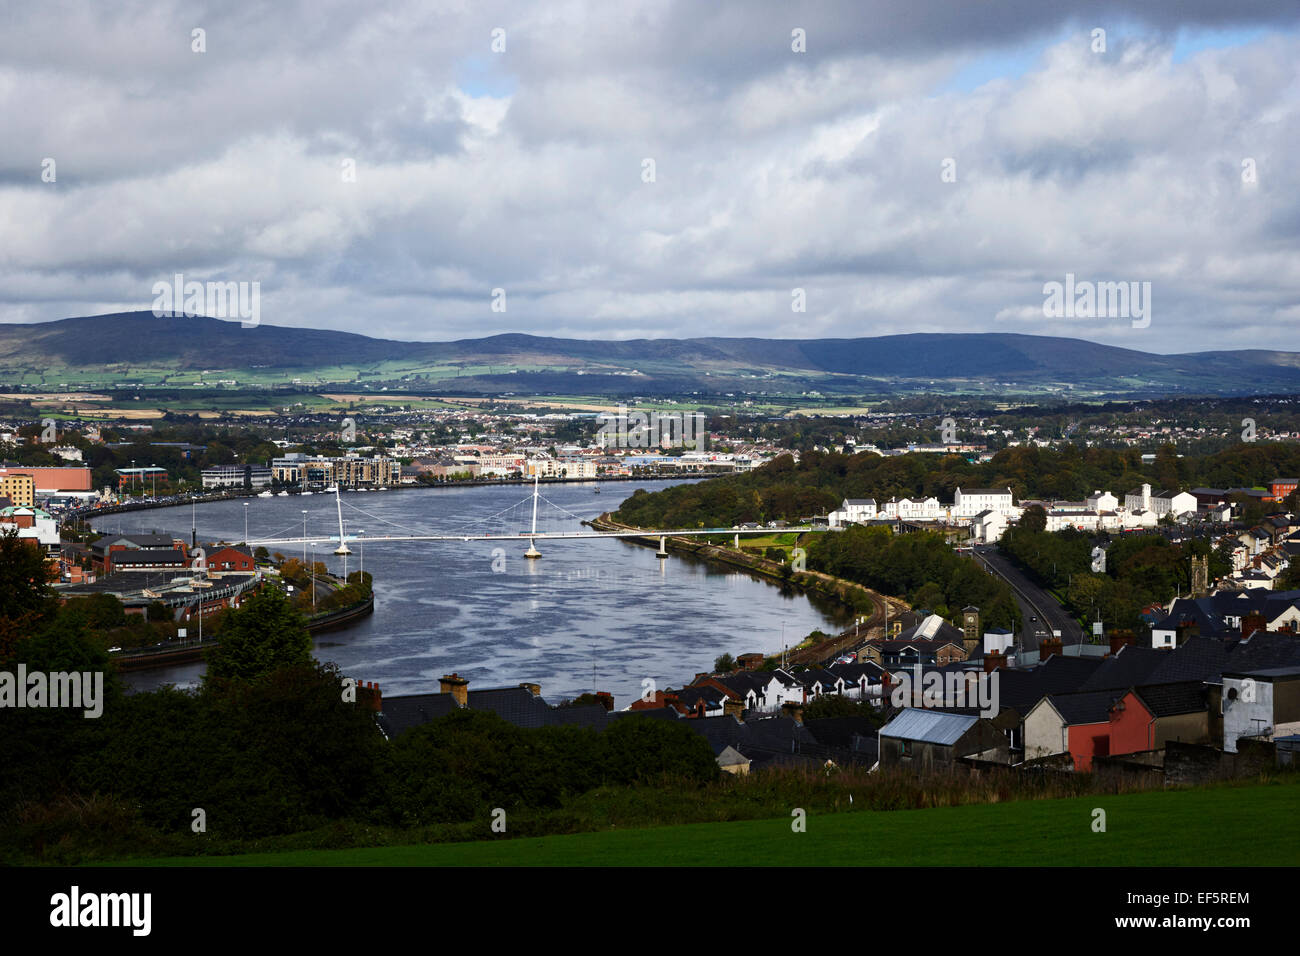 Le centre-ville de Londonderry derry rivière Foyle vue paysage d'Irlande Banque D'Images